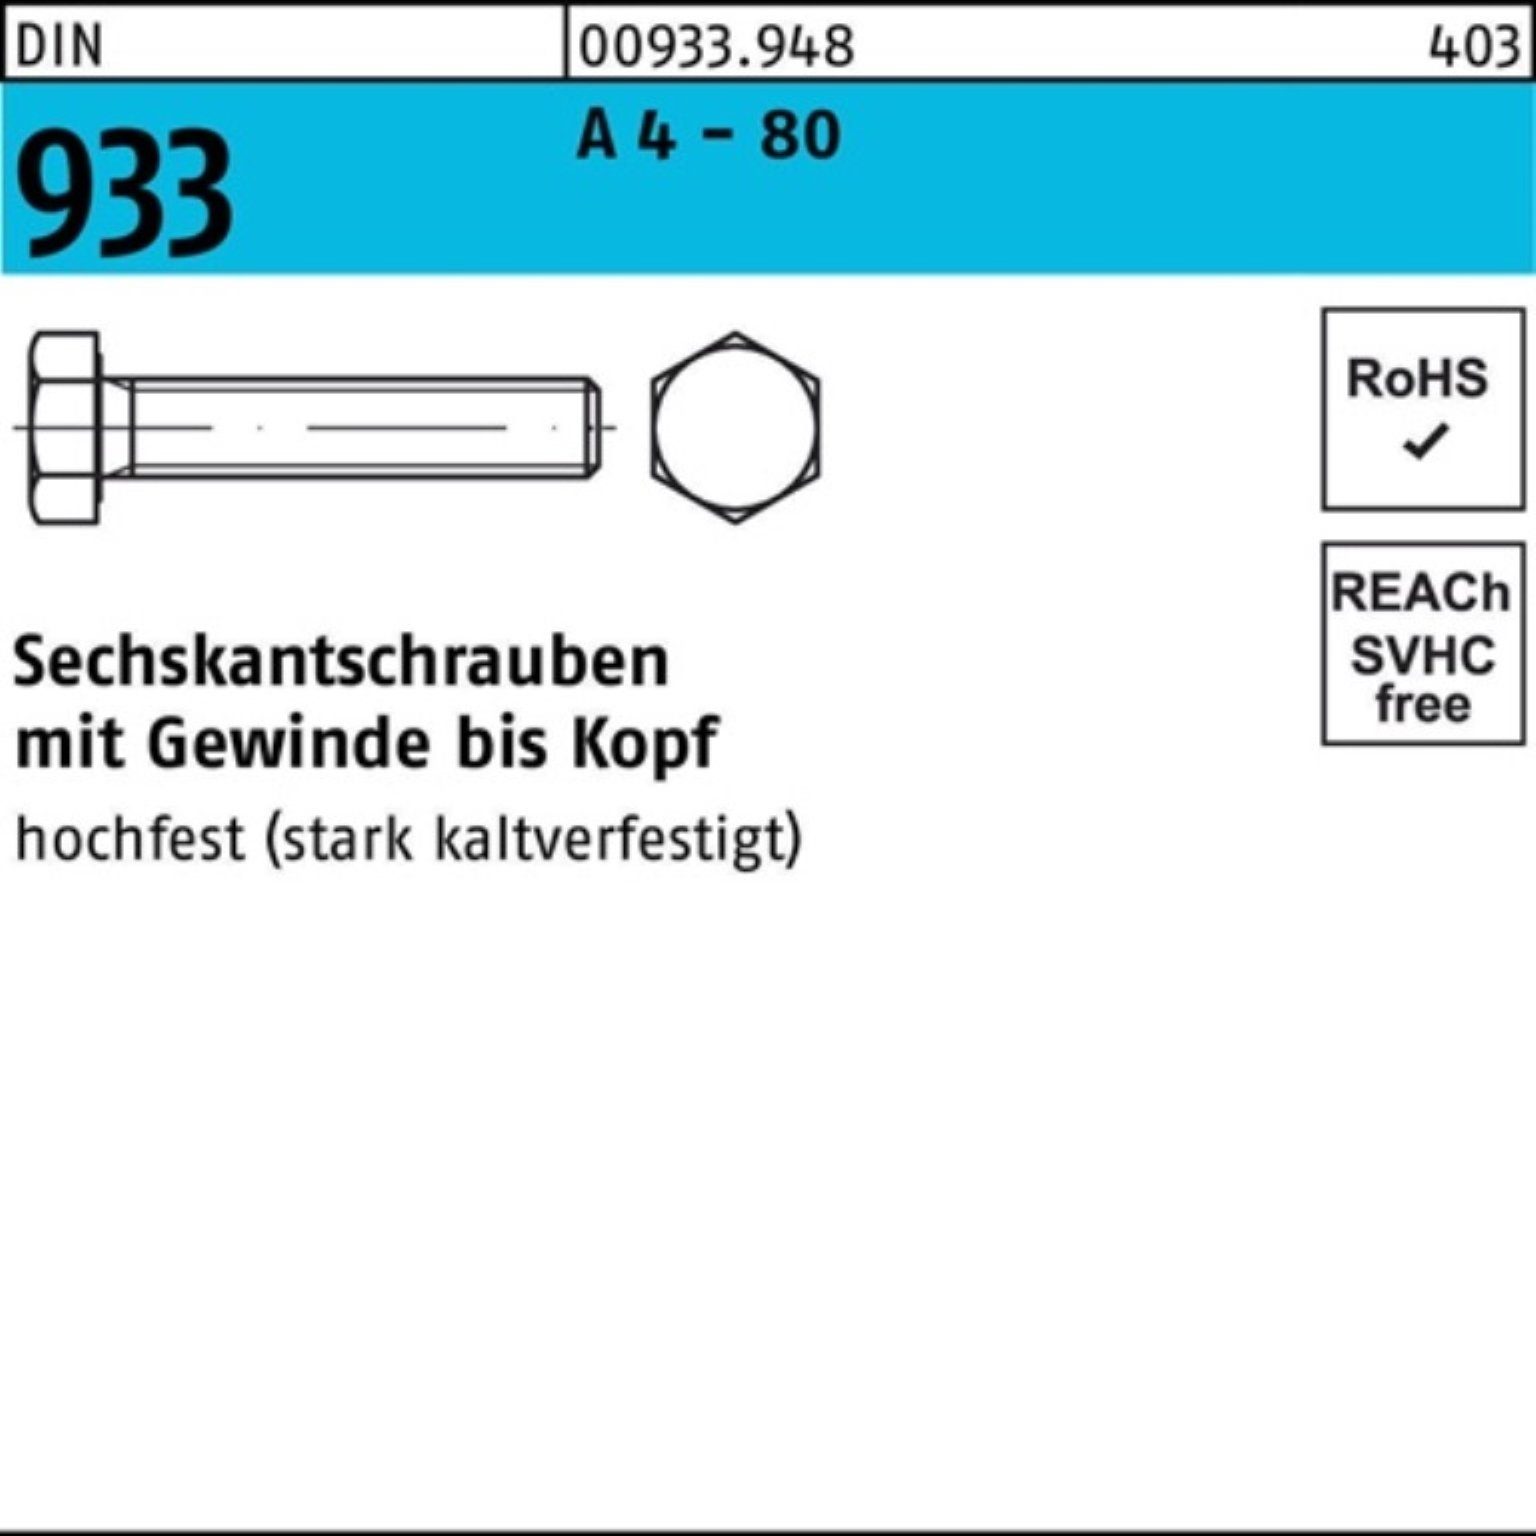 Reyher Sechskantschraube 500er Pack Sechskantschraube DIN 933 VG M5x 16 A 4 - 80 500 Stück DIN